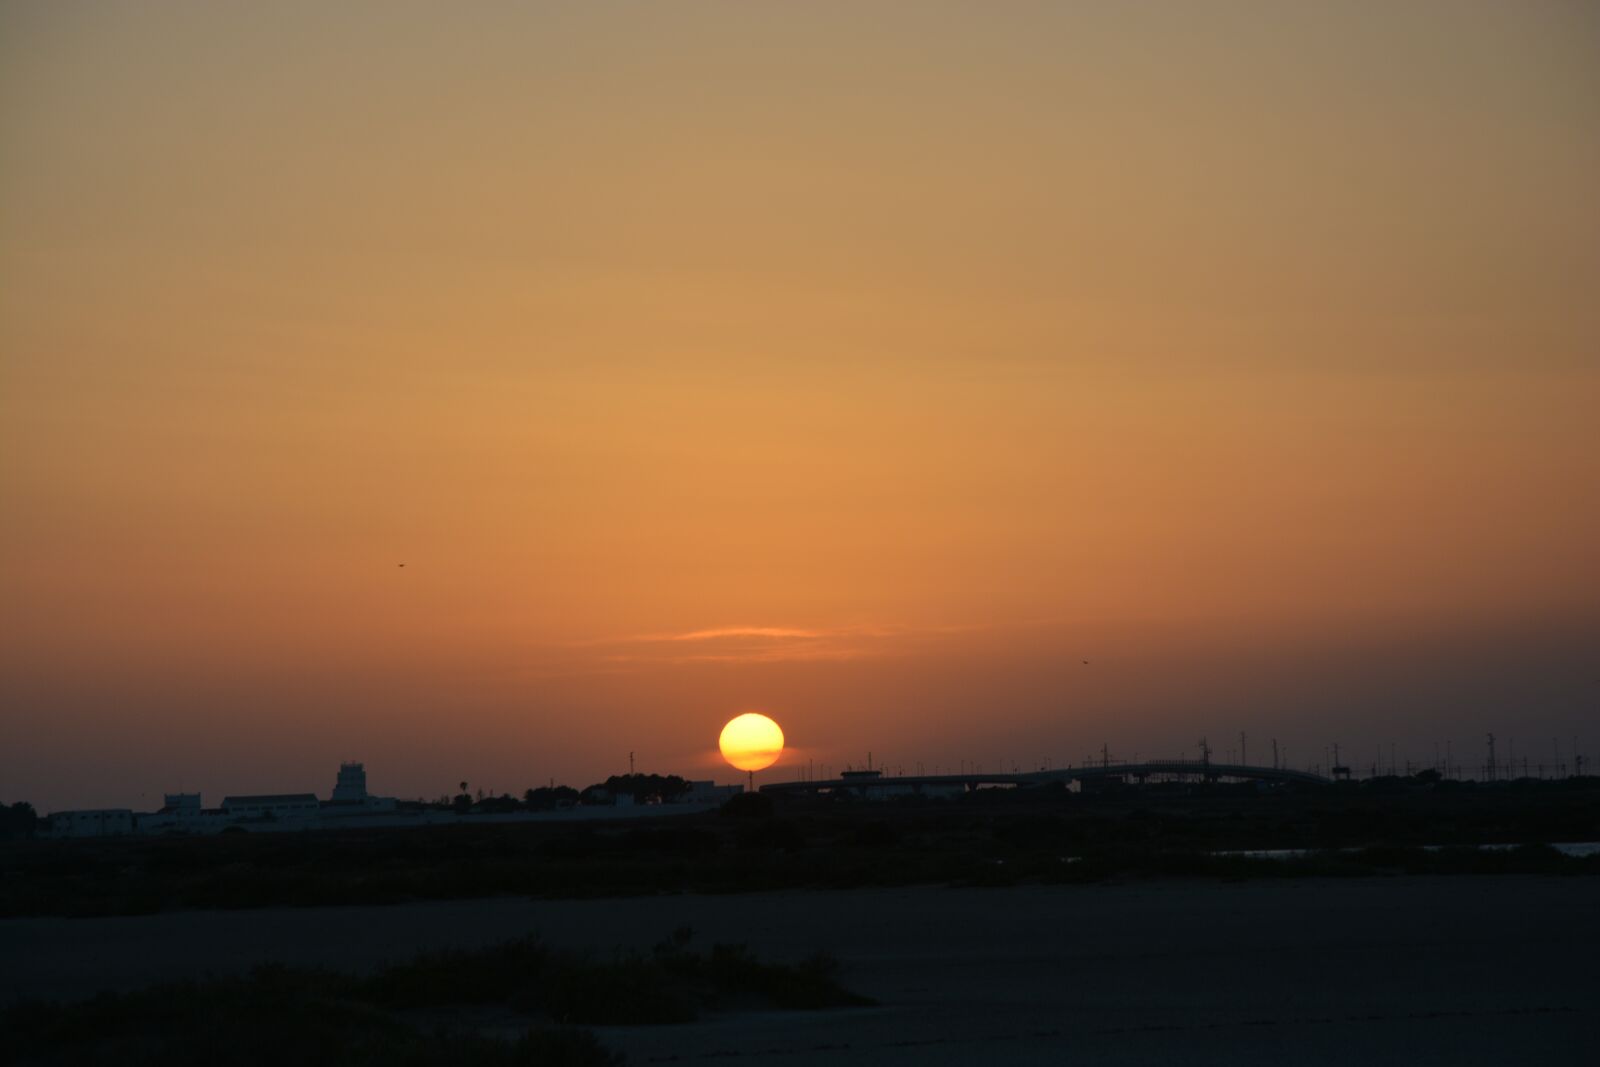 Nikon D5200 sample photo. Sunset photography